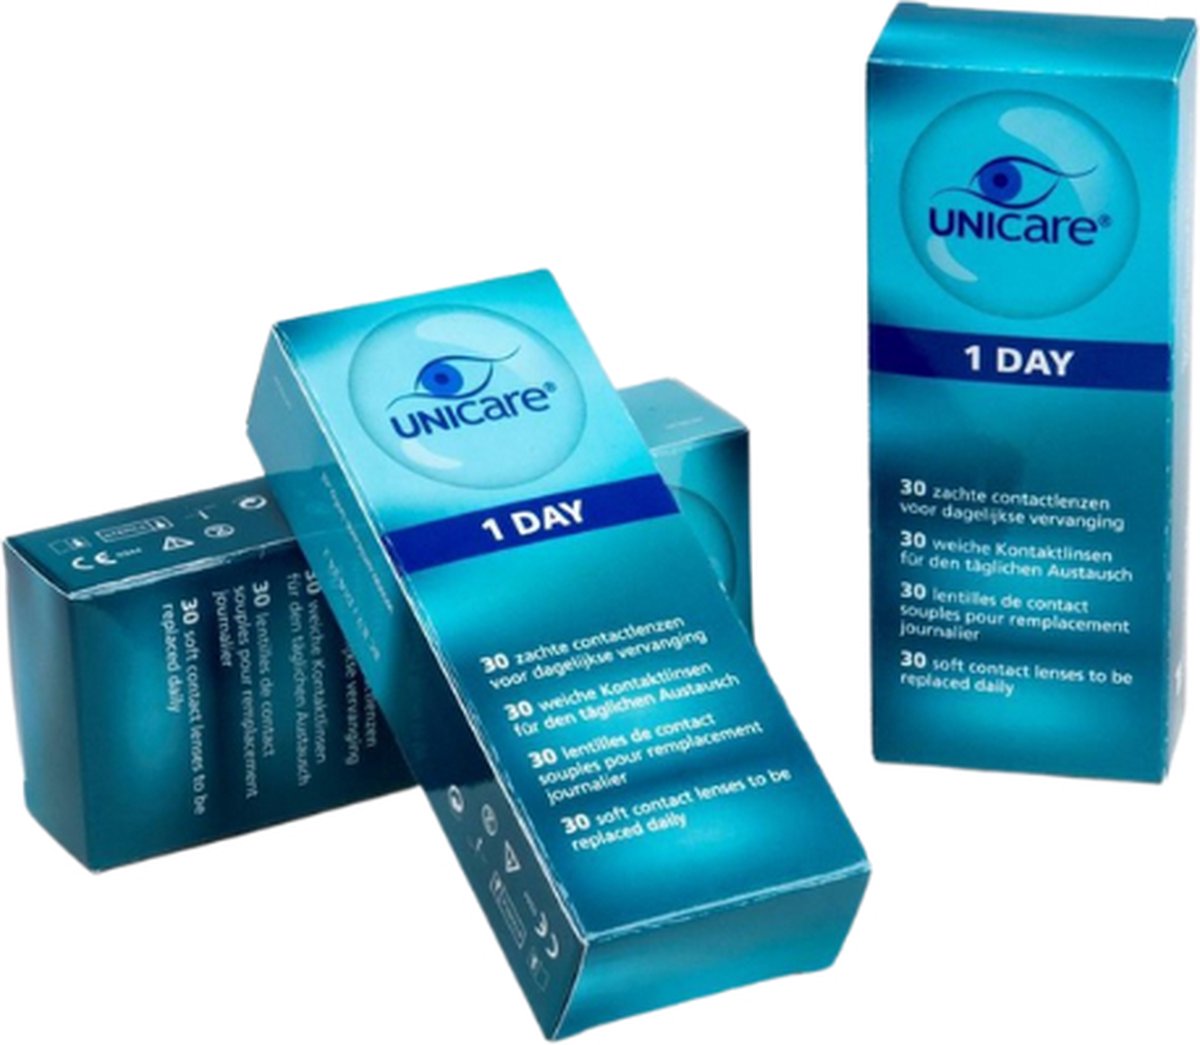 Unicare daglenzen -3,75 - 90 stuks - zachte contactlenzen dag - voordeelverpakking